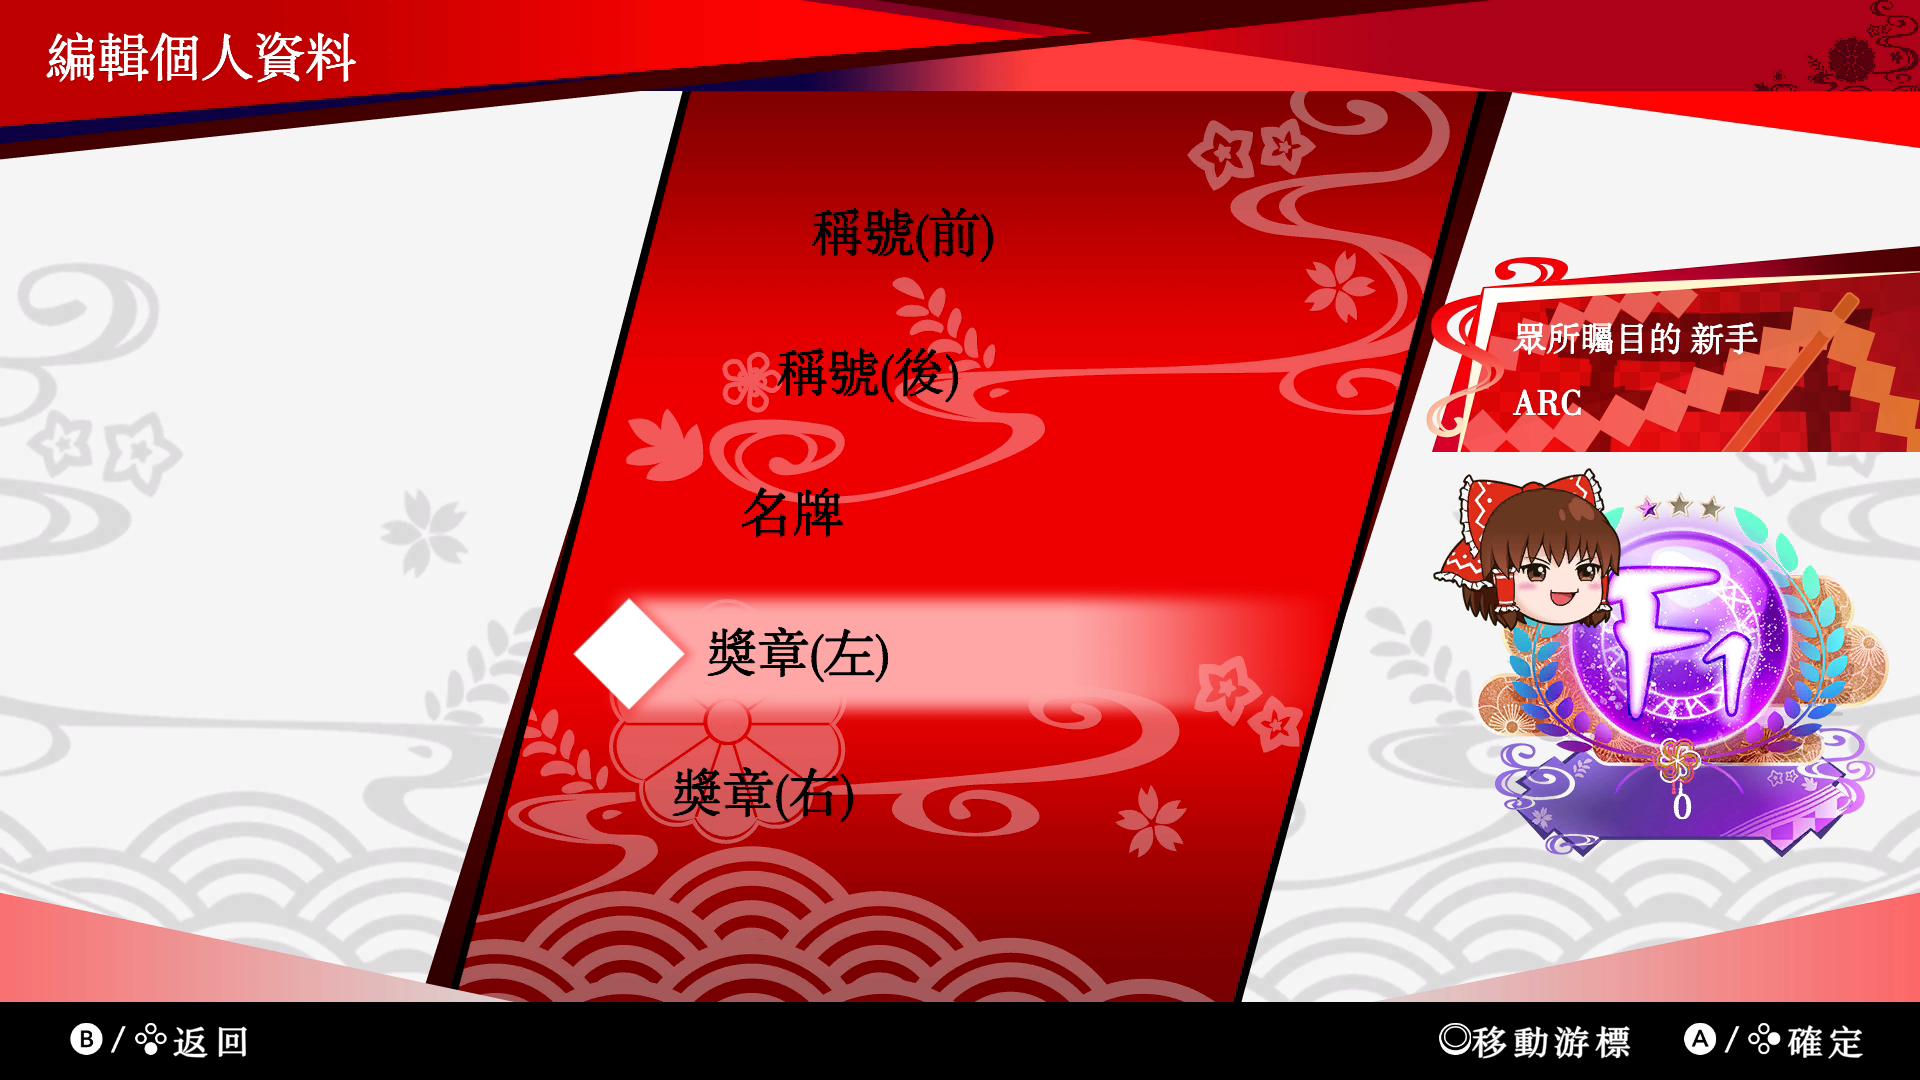 《东方咒术泡泡》新增角色包第八波「角色包 八云蓝」上市 新增「任务」功能